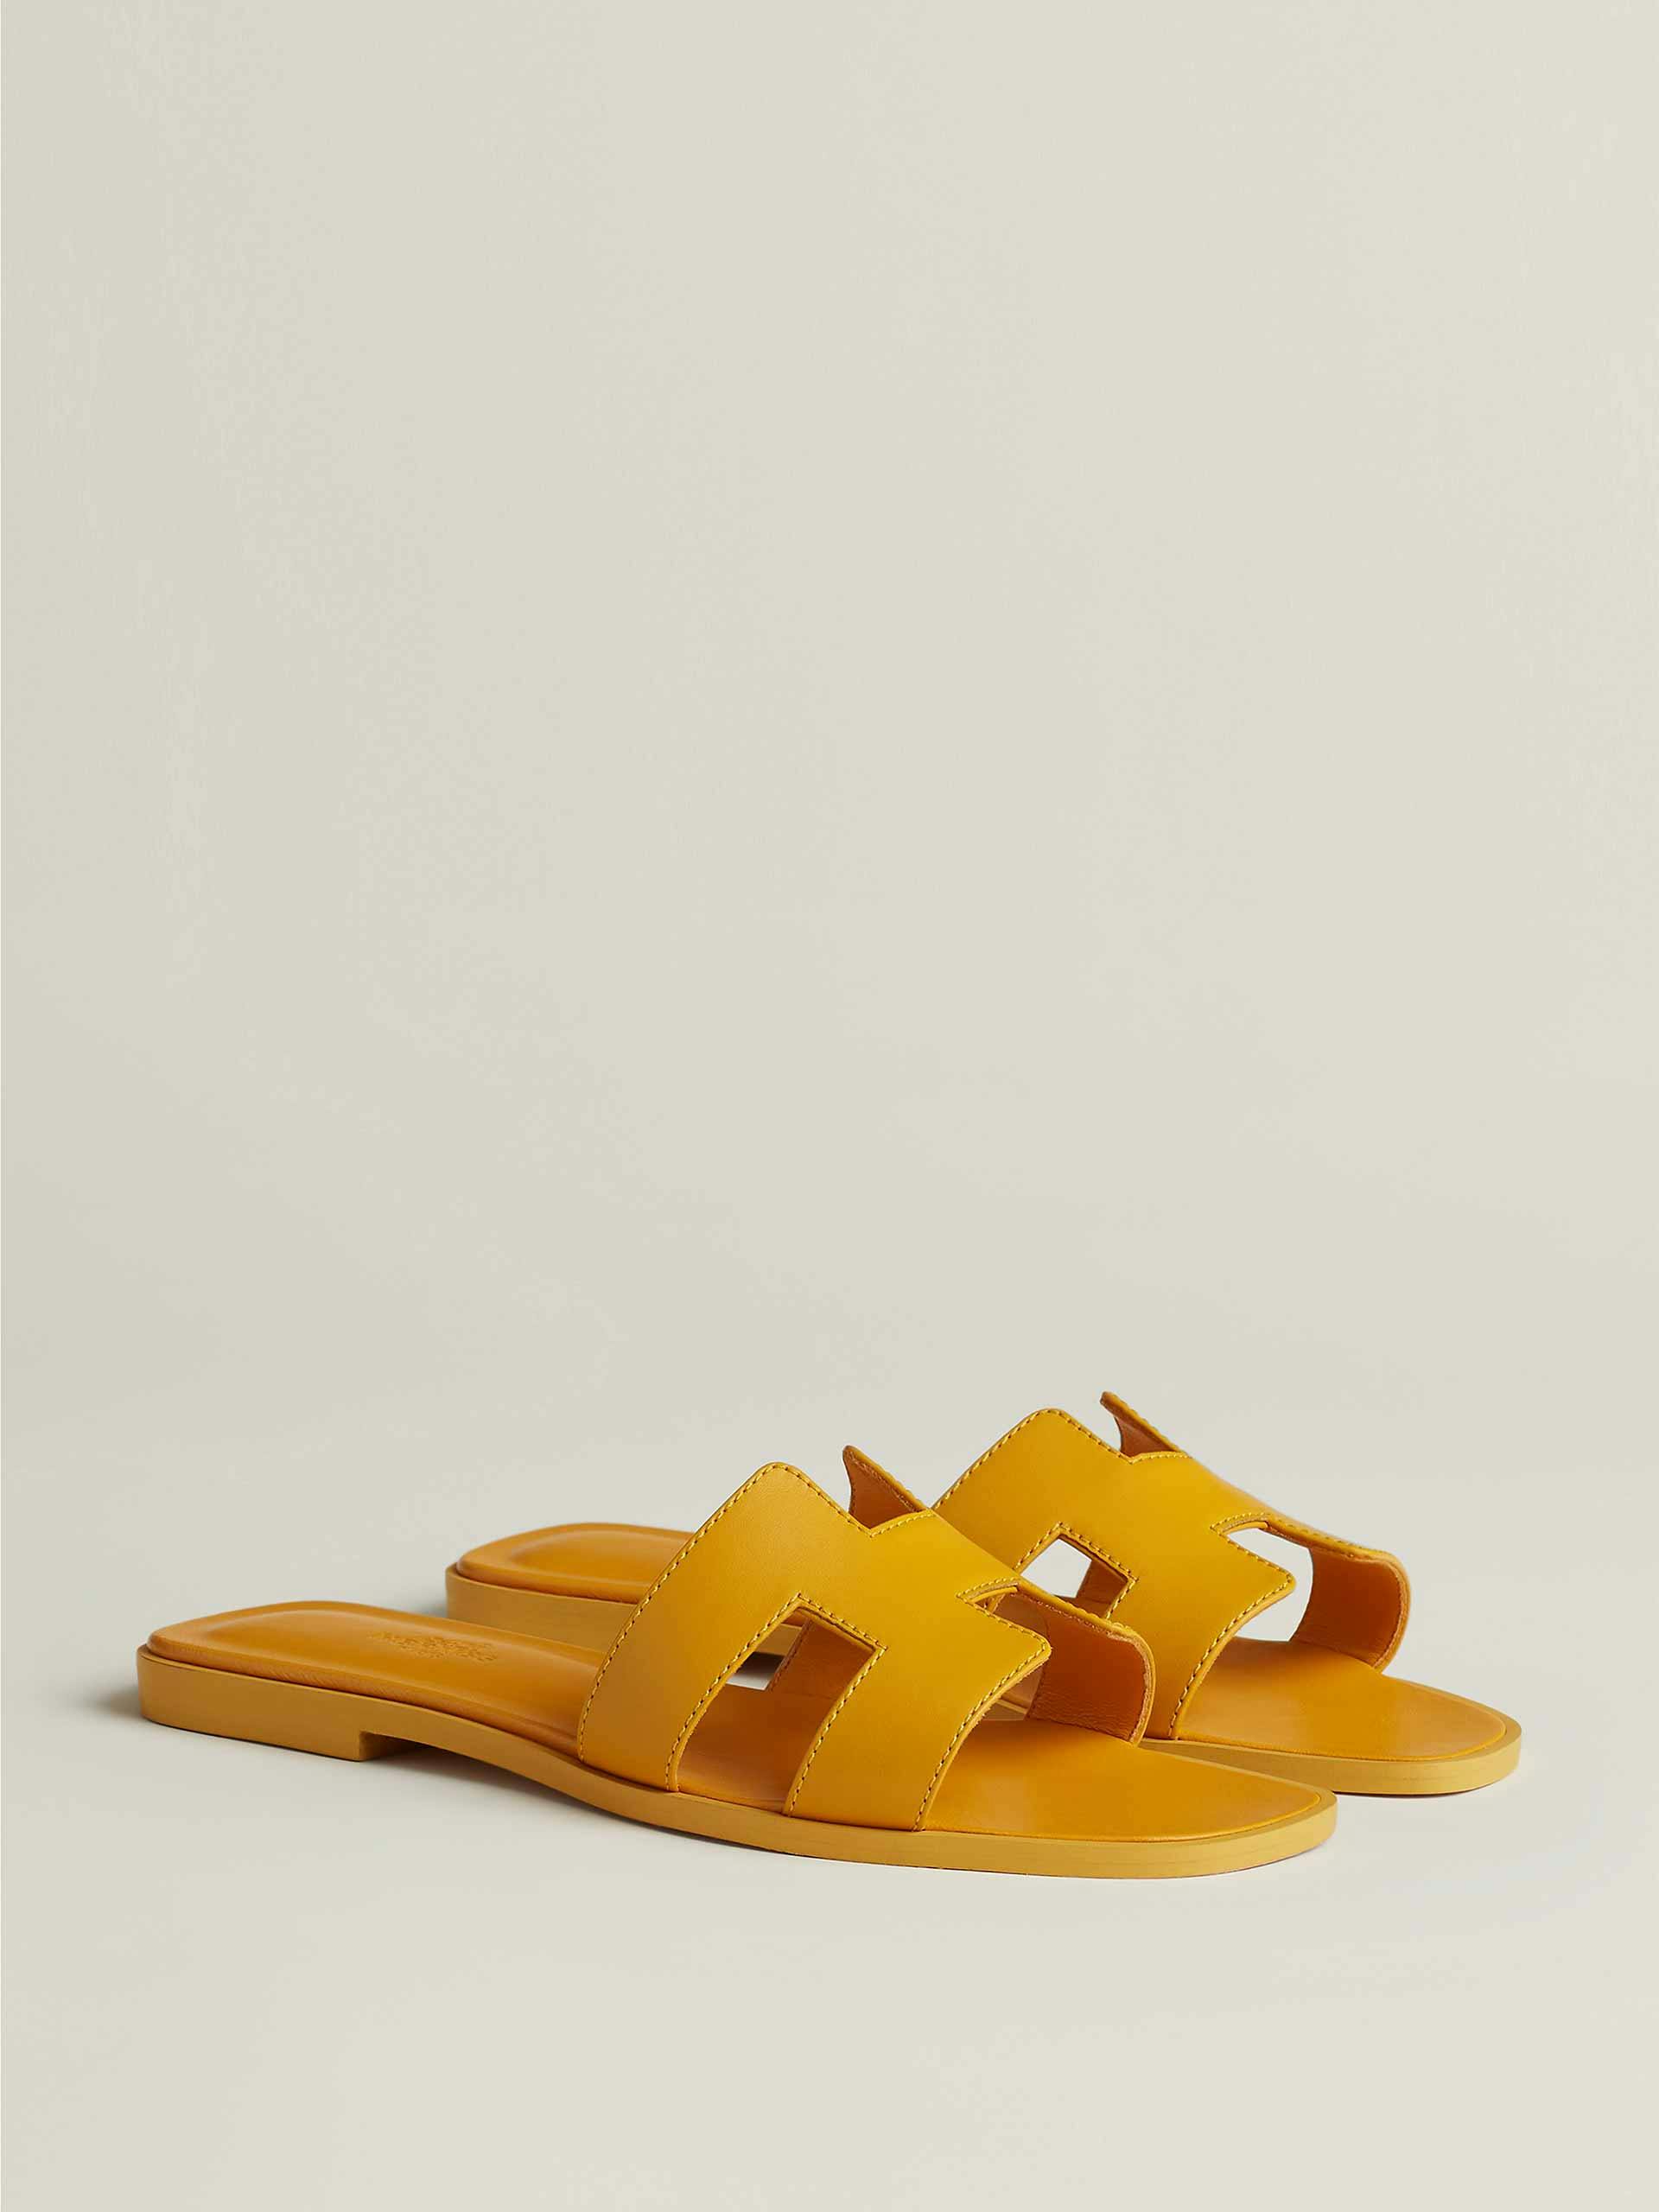 Orange calfskin sandals